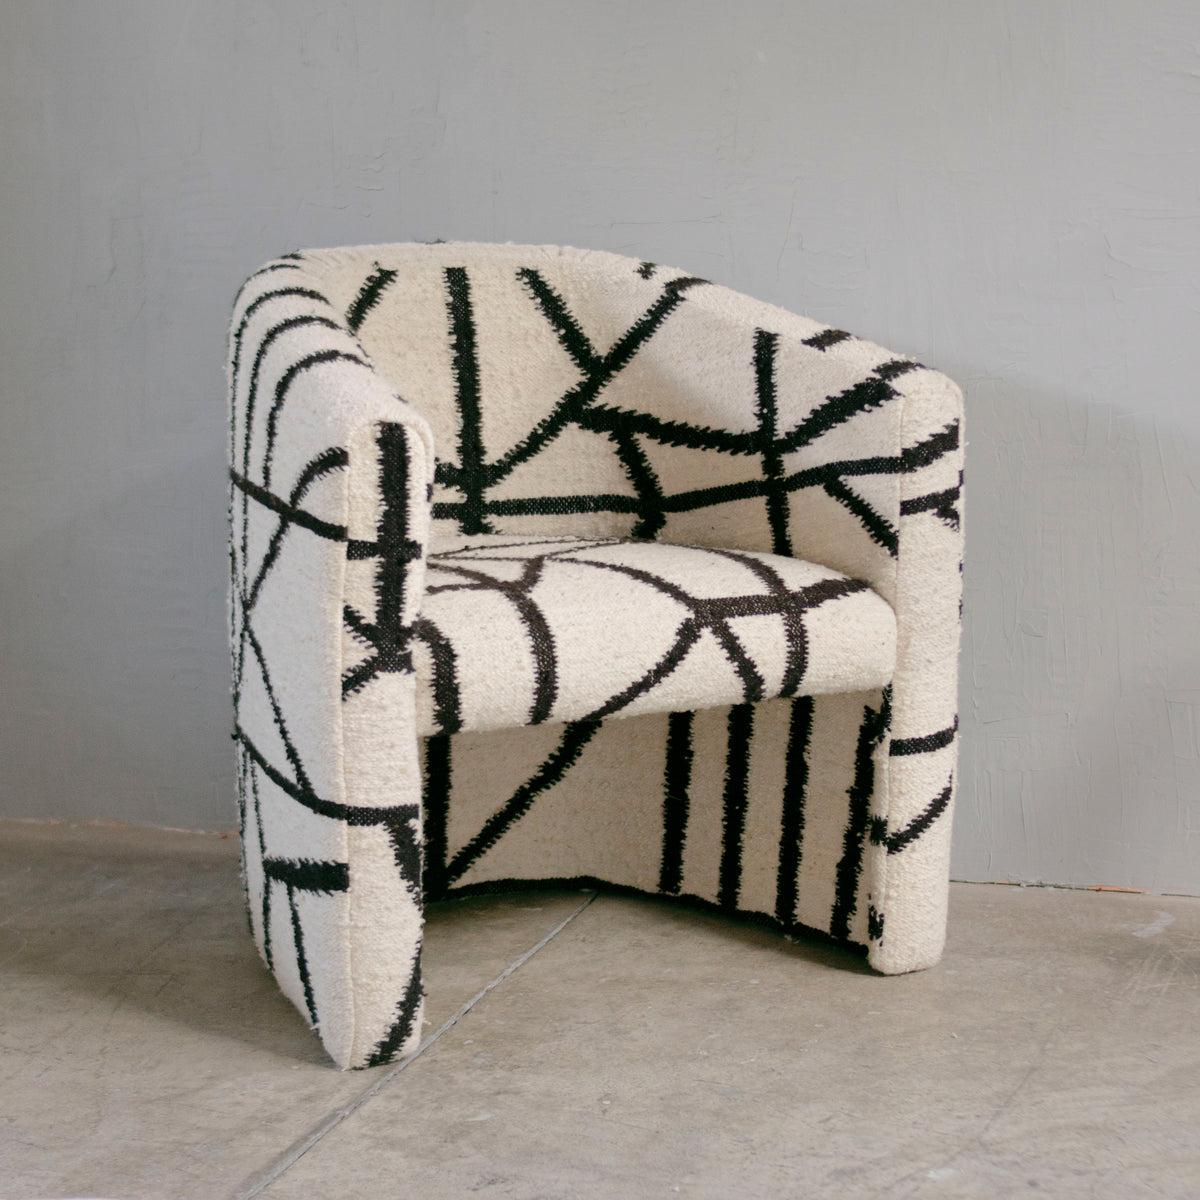 Der Senderos Wool Chair ist ein einzigartiges und kreativ gestaltetes Möbelstück, das das Zusammenspiel der Linien erforscht. Dieser Stuhl wird von Kunsthandwerkern in Momostenango, Guatemala, hergestellt, die jedes Stück auf einem Pedalwebstuhl aus